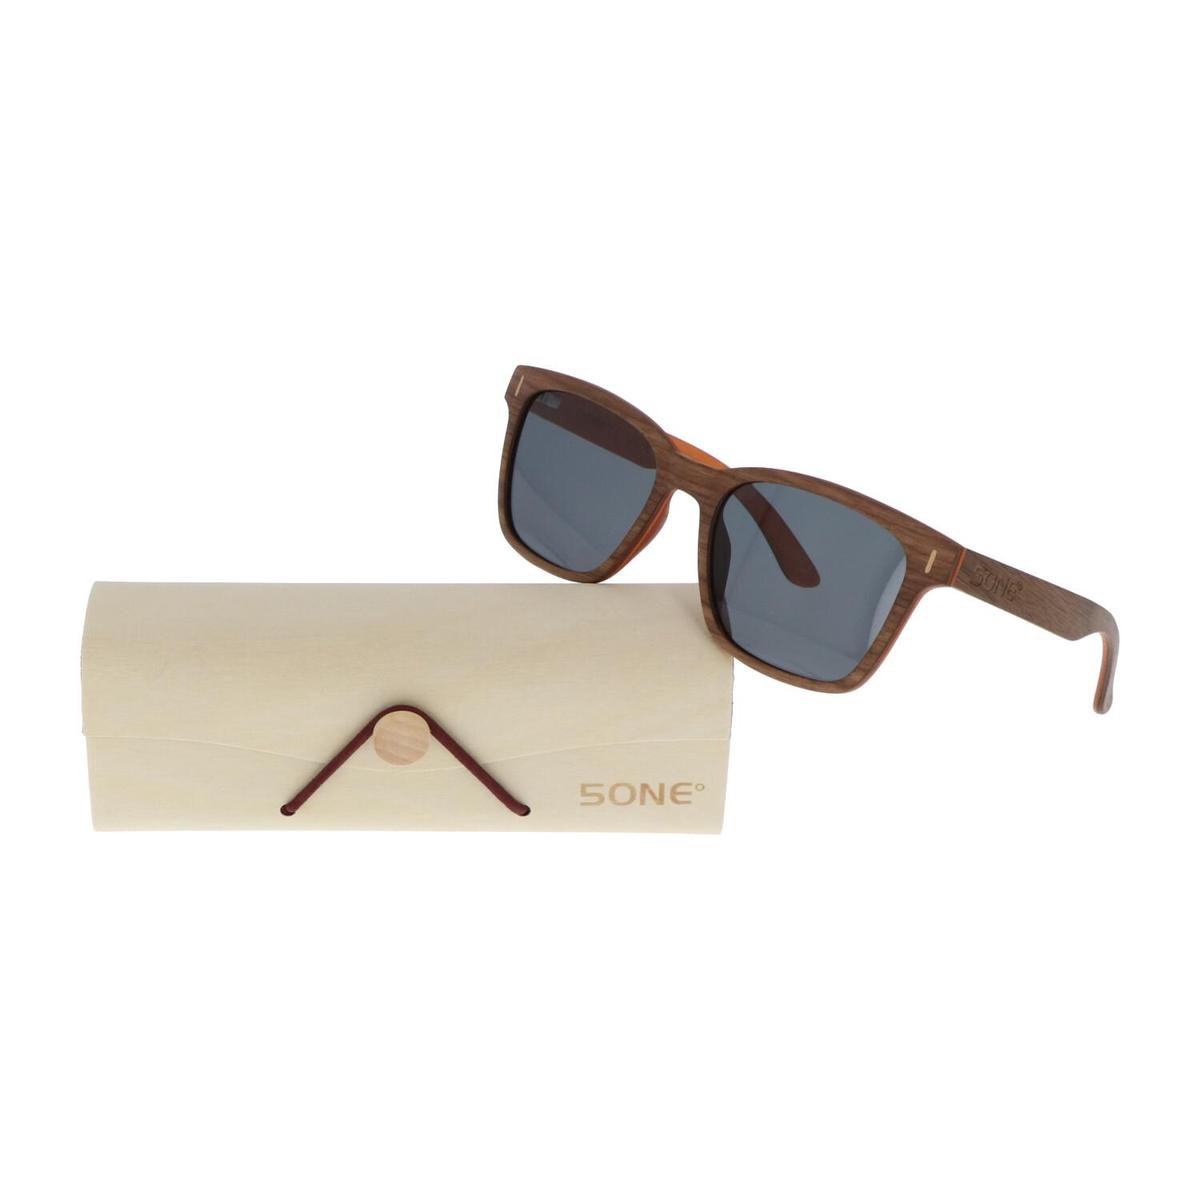 5one® Slim Line Walnut Grey - Walnoot Houten zonnebril met grijze lens